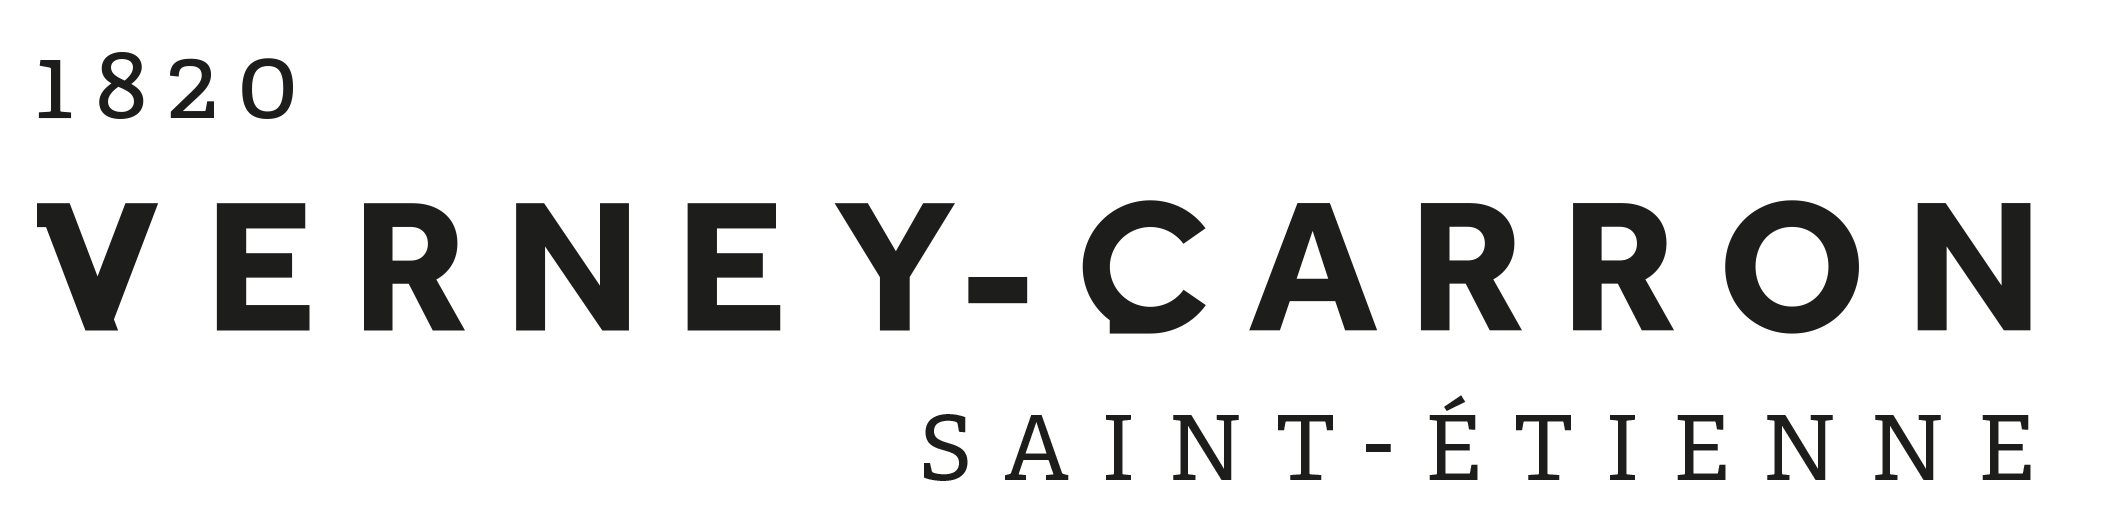 https://fetedulivre.saint-etienne.fr/wp-content/uploads/2018/08/Logo-Verney-Carron-Saint-Etienne.png